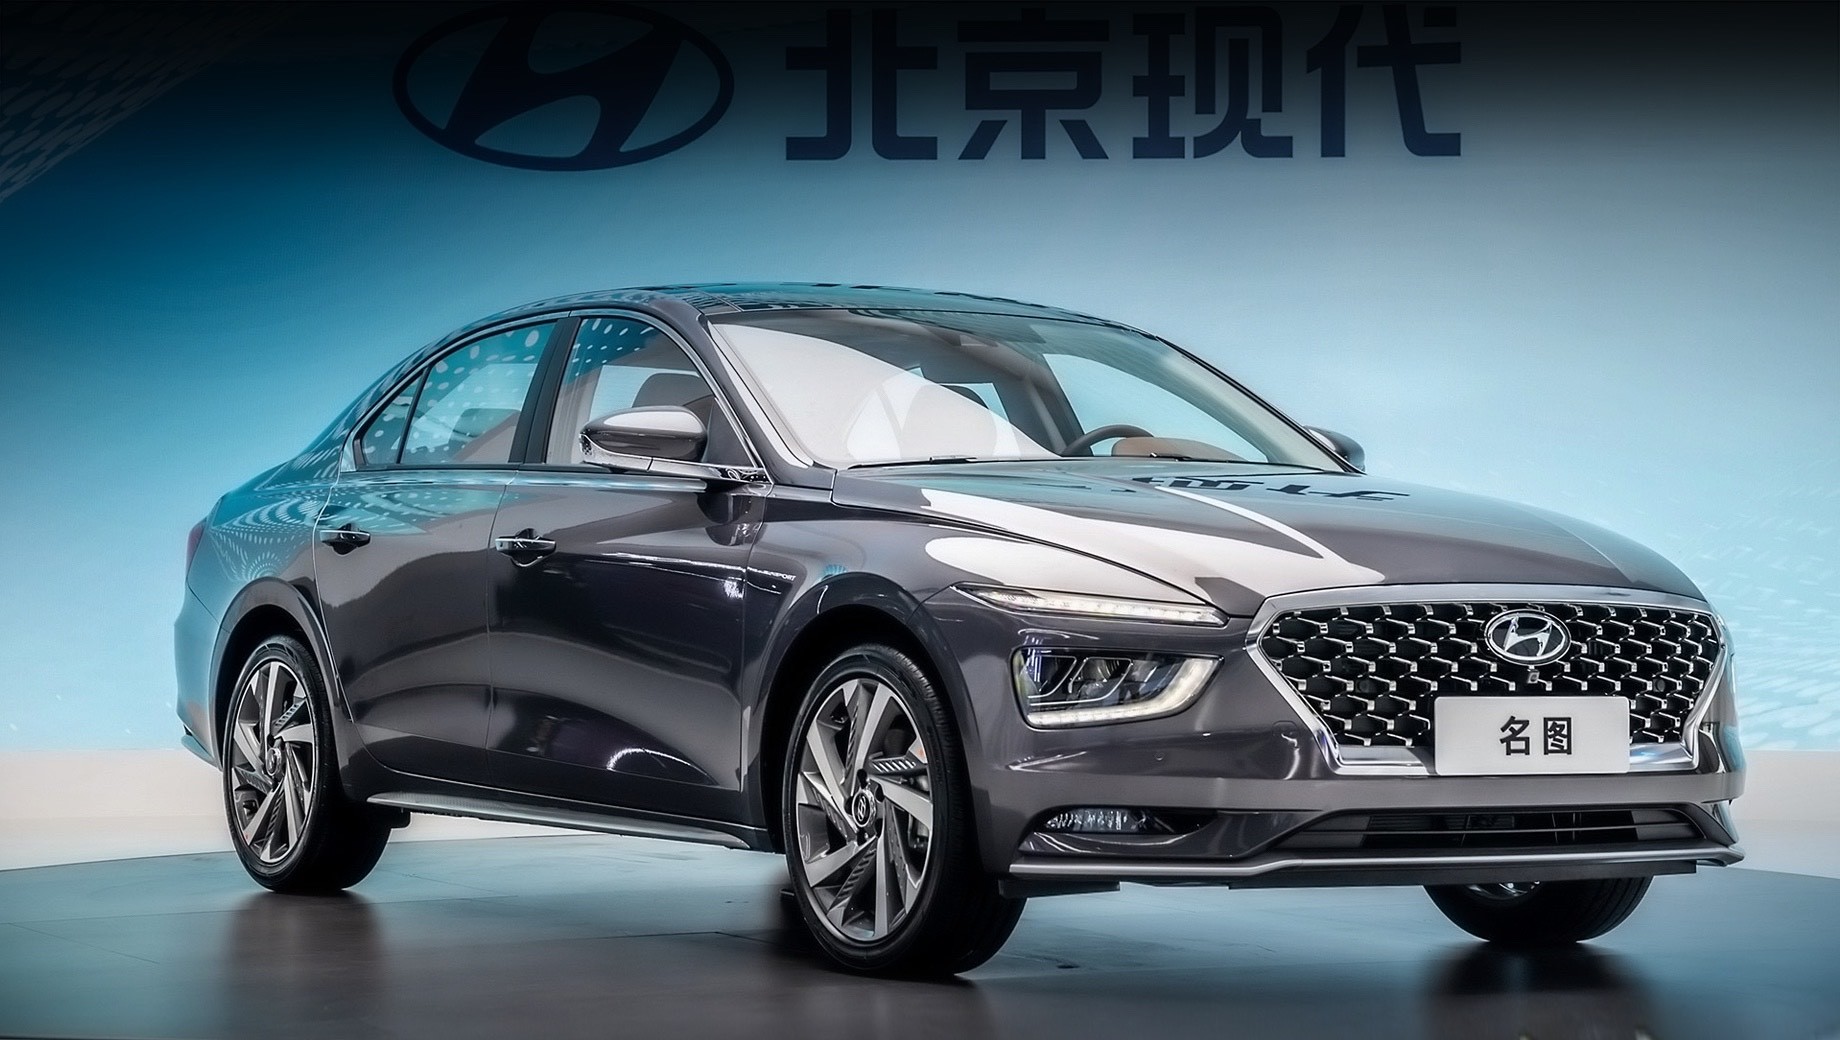 Hyundai mistra,Hyundai mistra ev. Производство четырёхдверки Hyundai Mistra на заводе в Пекине стартует в ближайшее время, а продажи модели начнутся в первом квартале 2021 года. Реализация машины за пределами Поднебесной, как и раньше, не планируется.